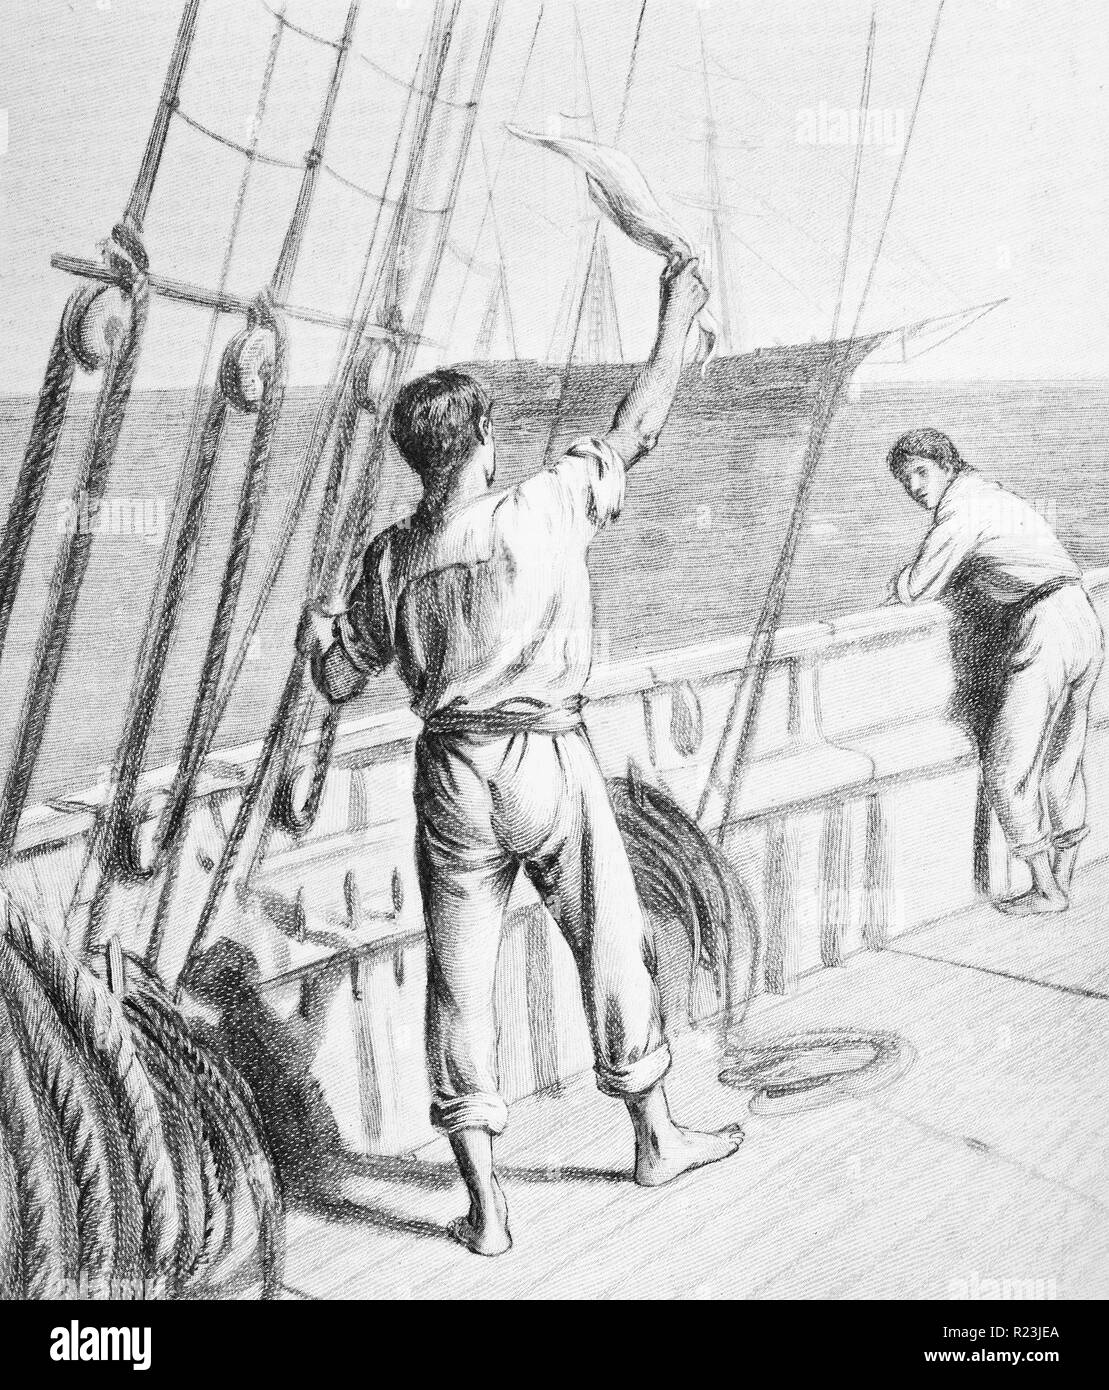 Illustration d'un livre illustrant un membre d'équipage en agitant d'un navire de passage. Datée 1913 Banque D'Images